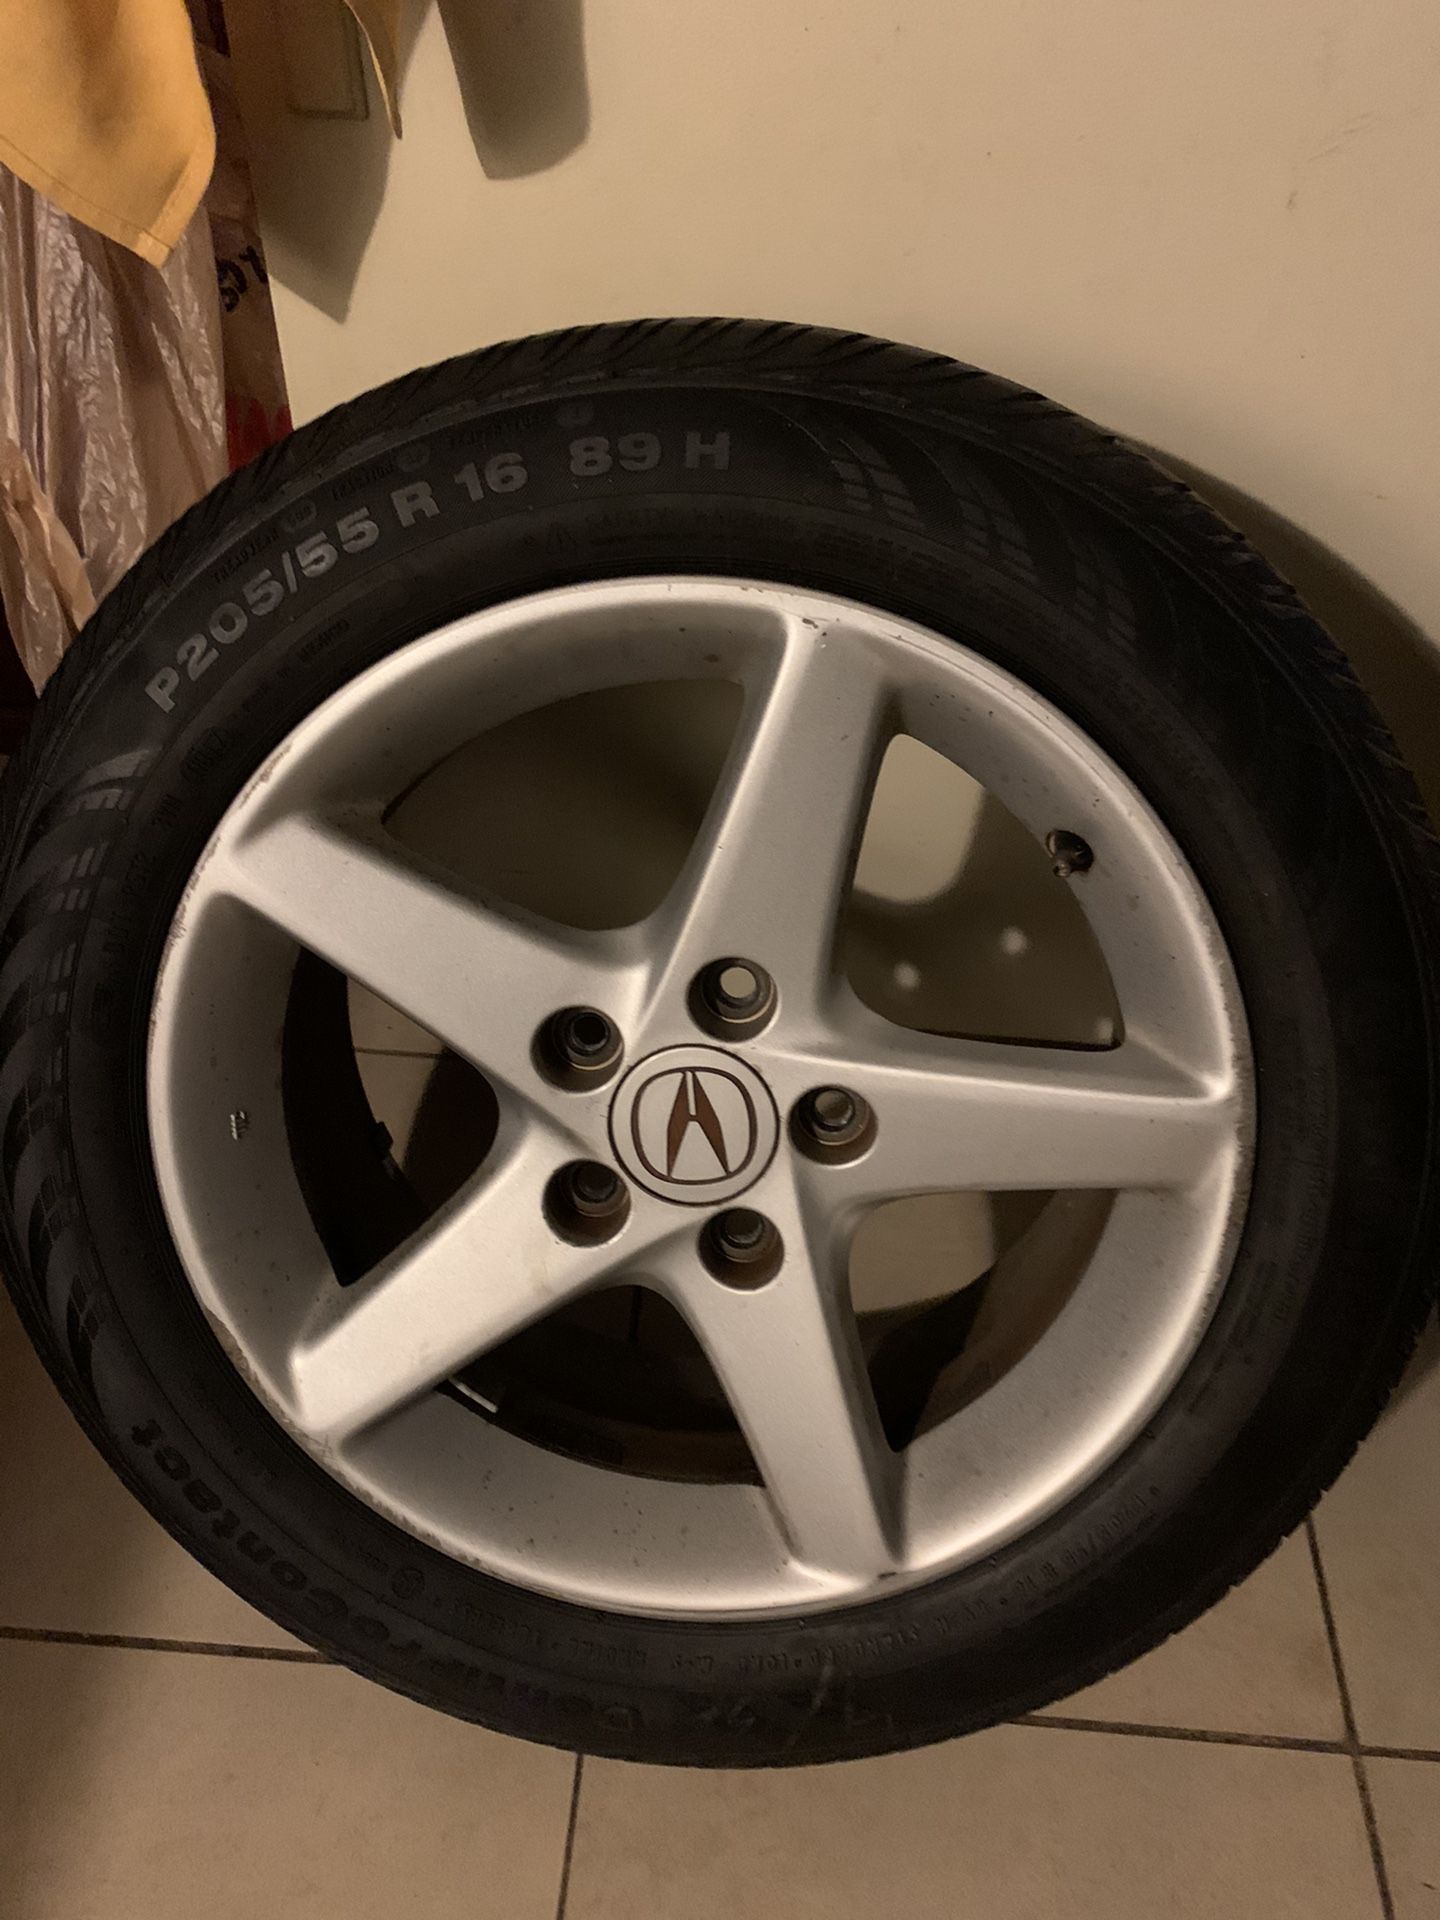 Acura rsx wheels stocks